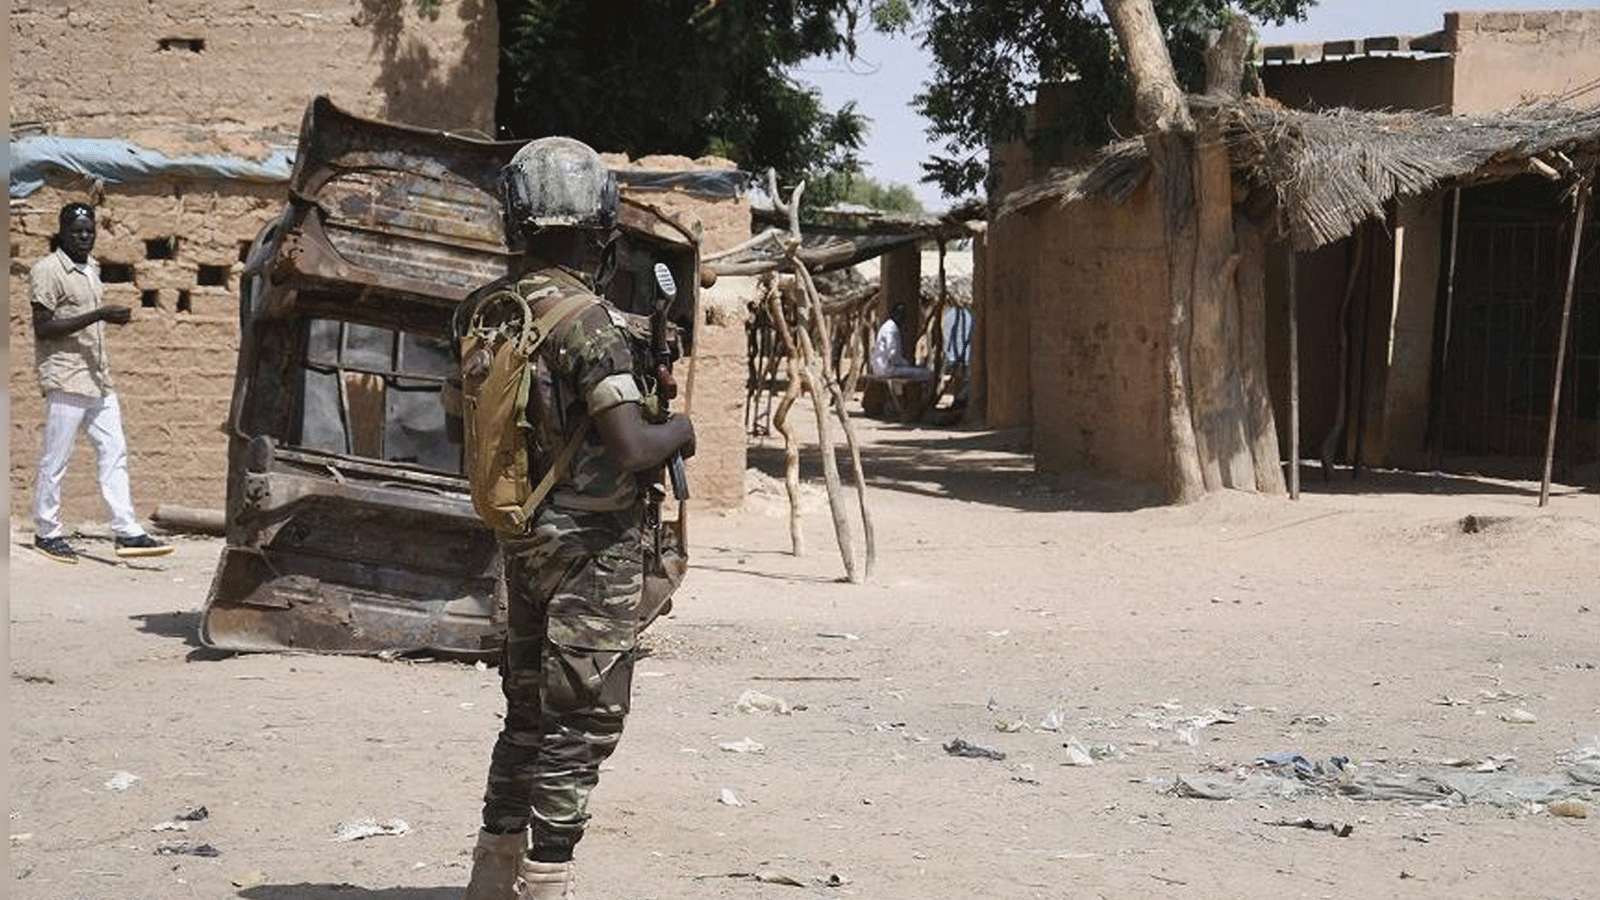 جندي نيجيري يقف في حراسة شارع بالقرب من سوق في بانيبانغو، وهي بلدة في غرب النيجير